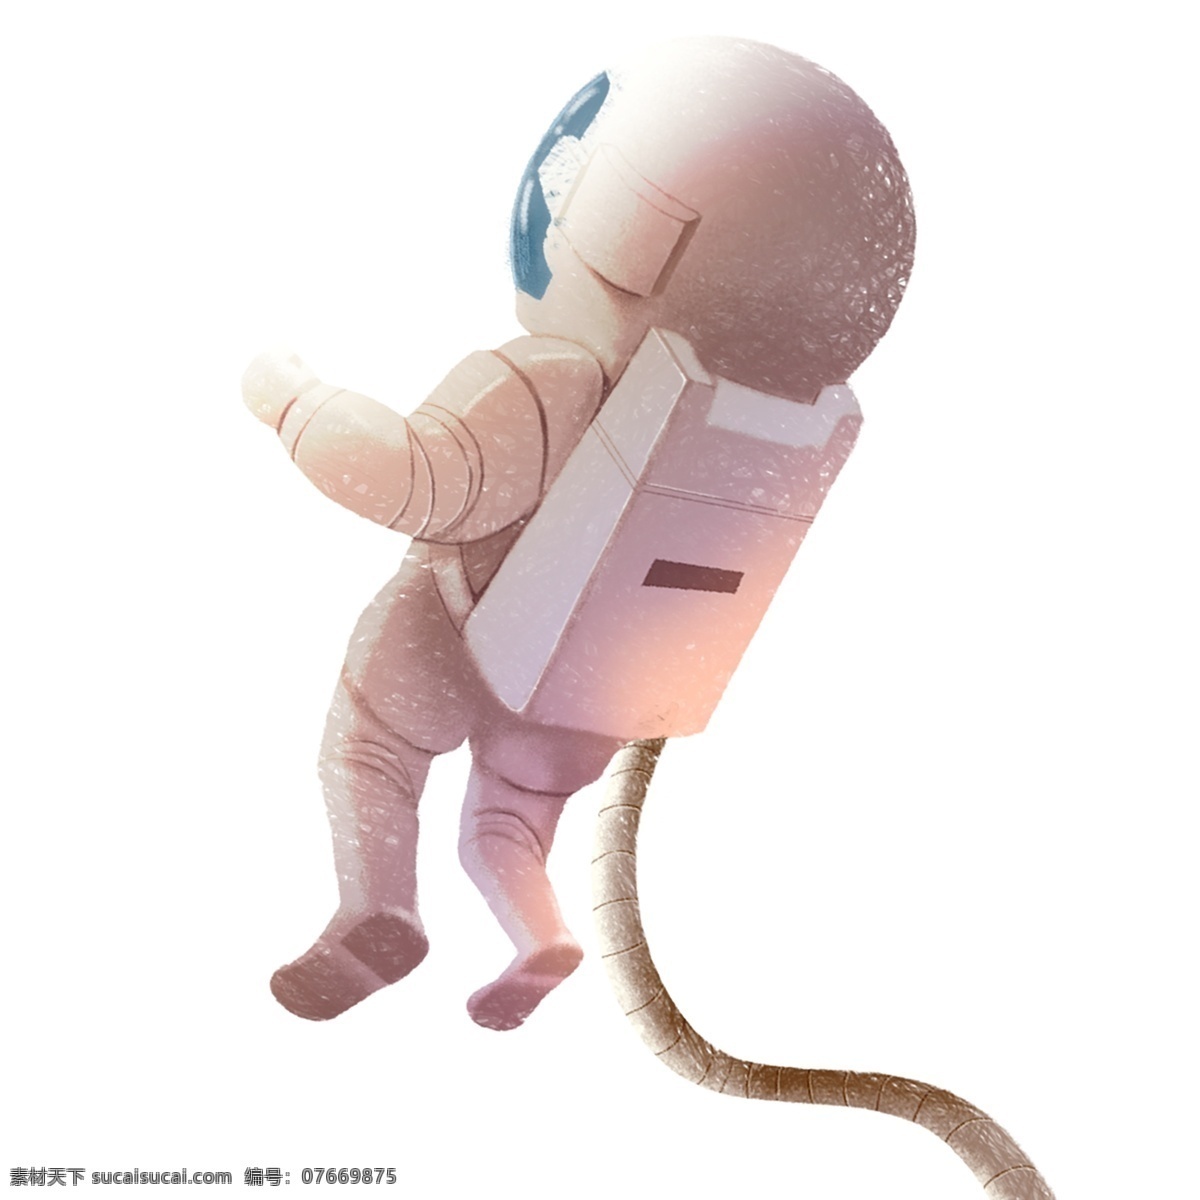 卡通 手绘 太空 宇航员 人物 梦幻 可爱 插画